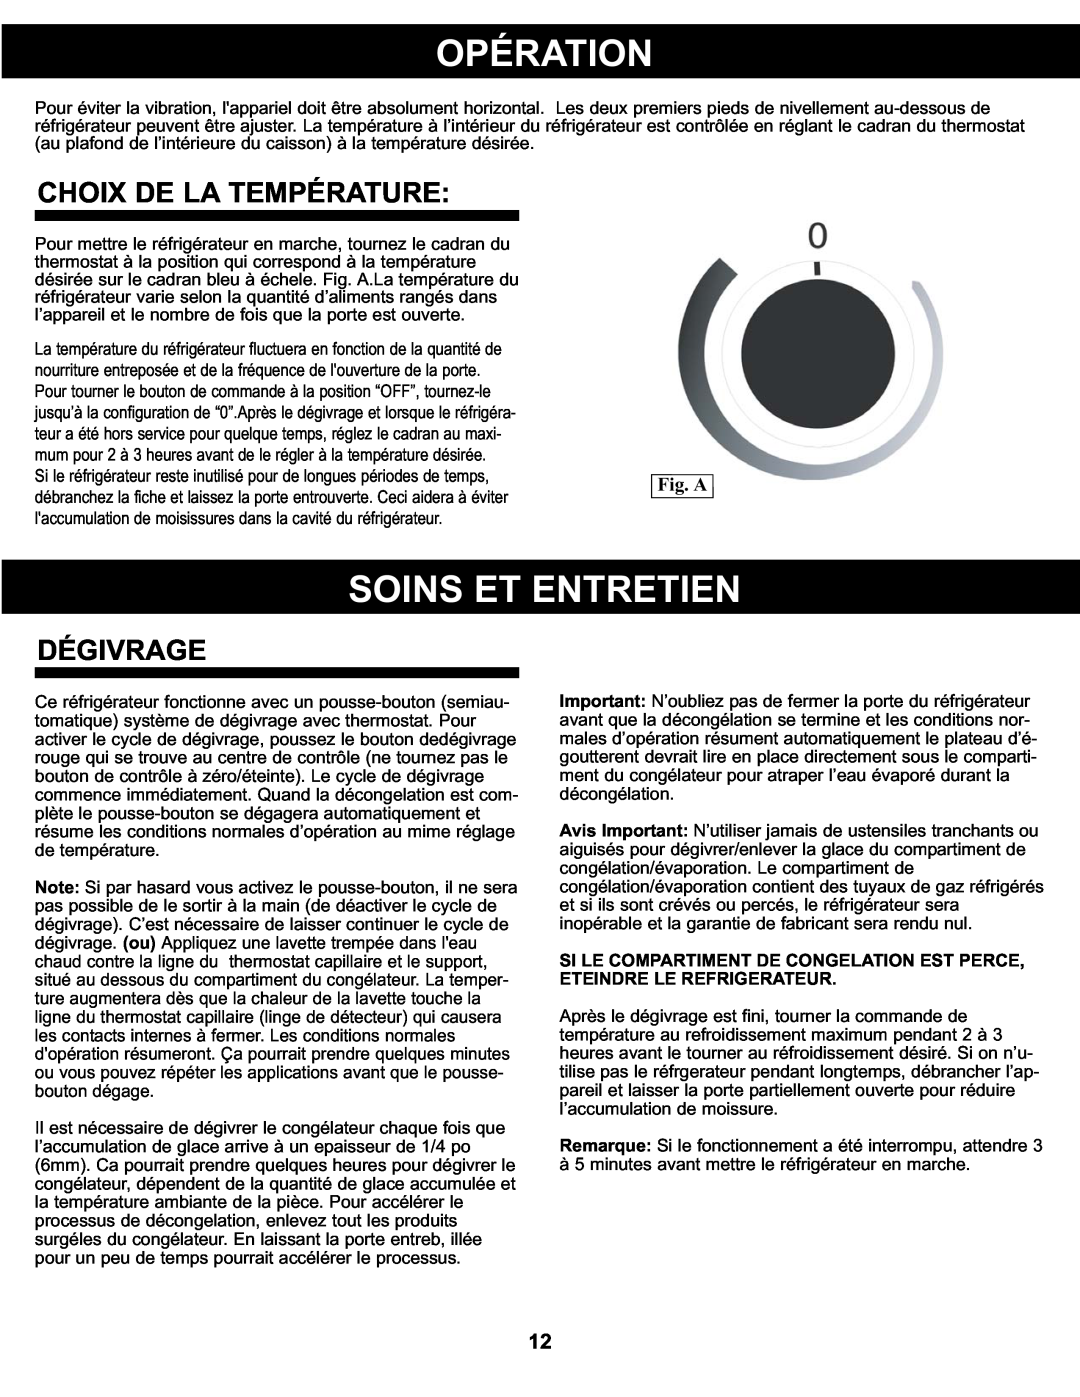 Danby DCR122BSLDD manual Opération, Soins Et Entretien, Choix De La Température, Dégivrage, Fig. A 